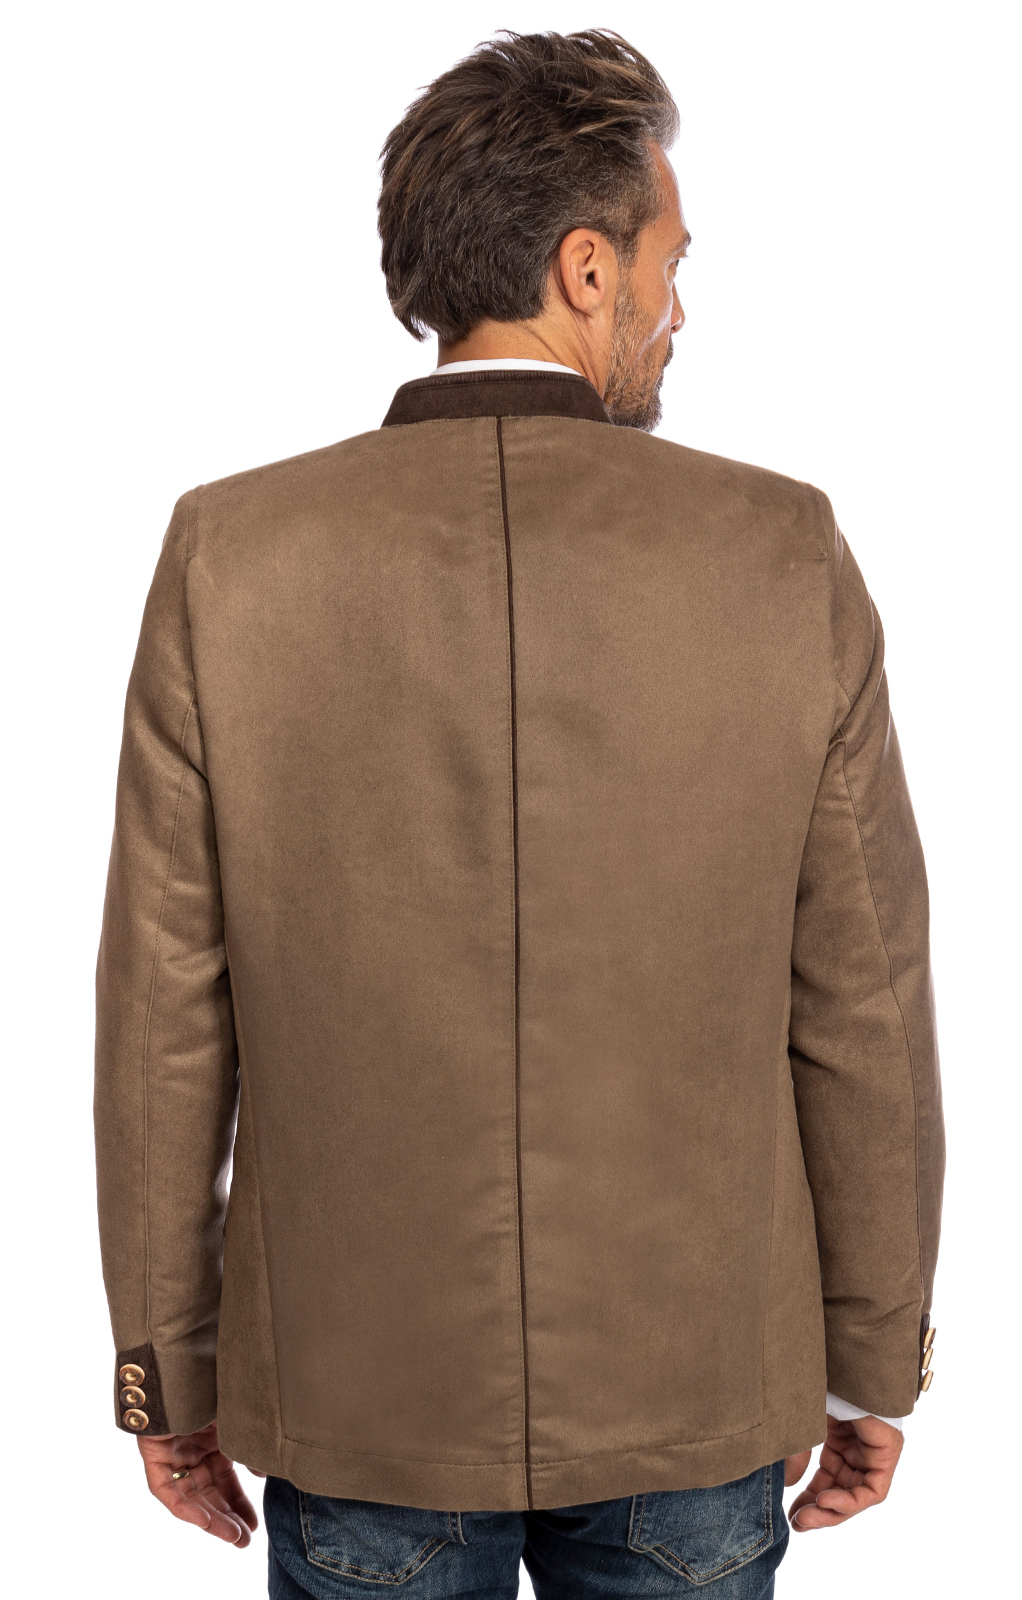 weitere Bilder von German traditional jacket HOCHEGG brown